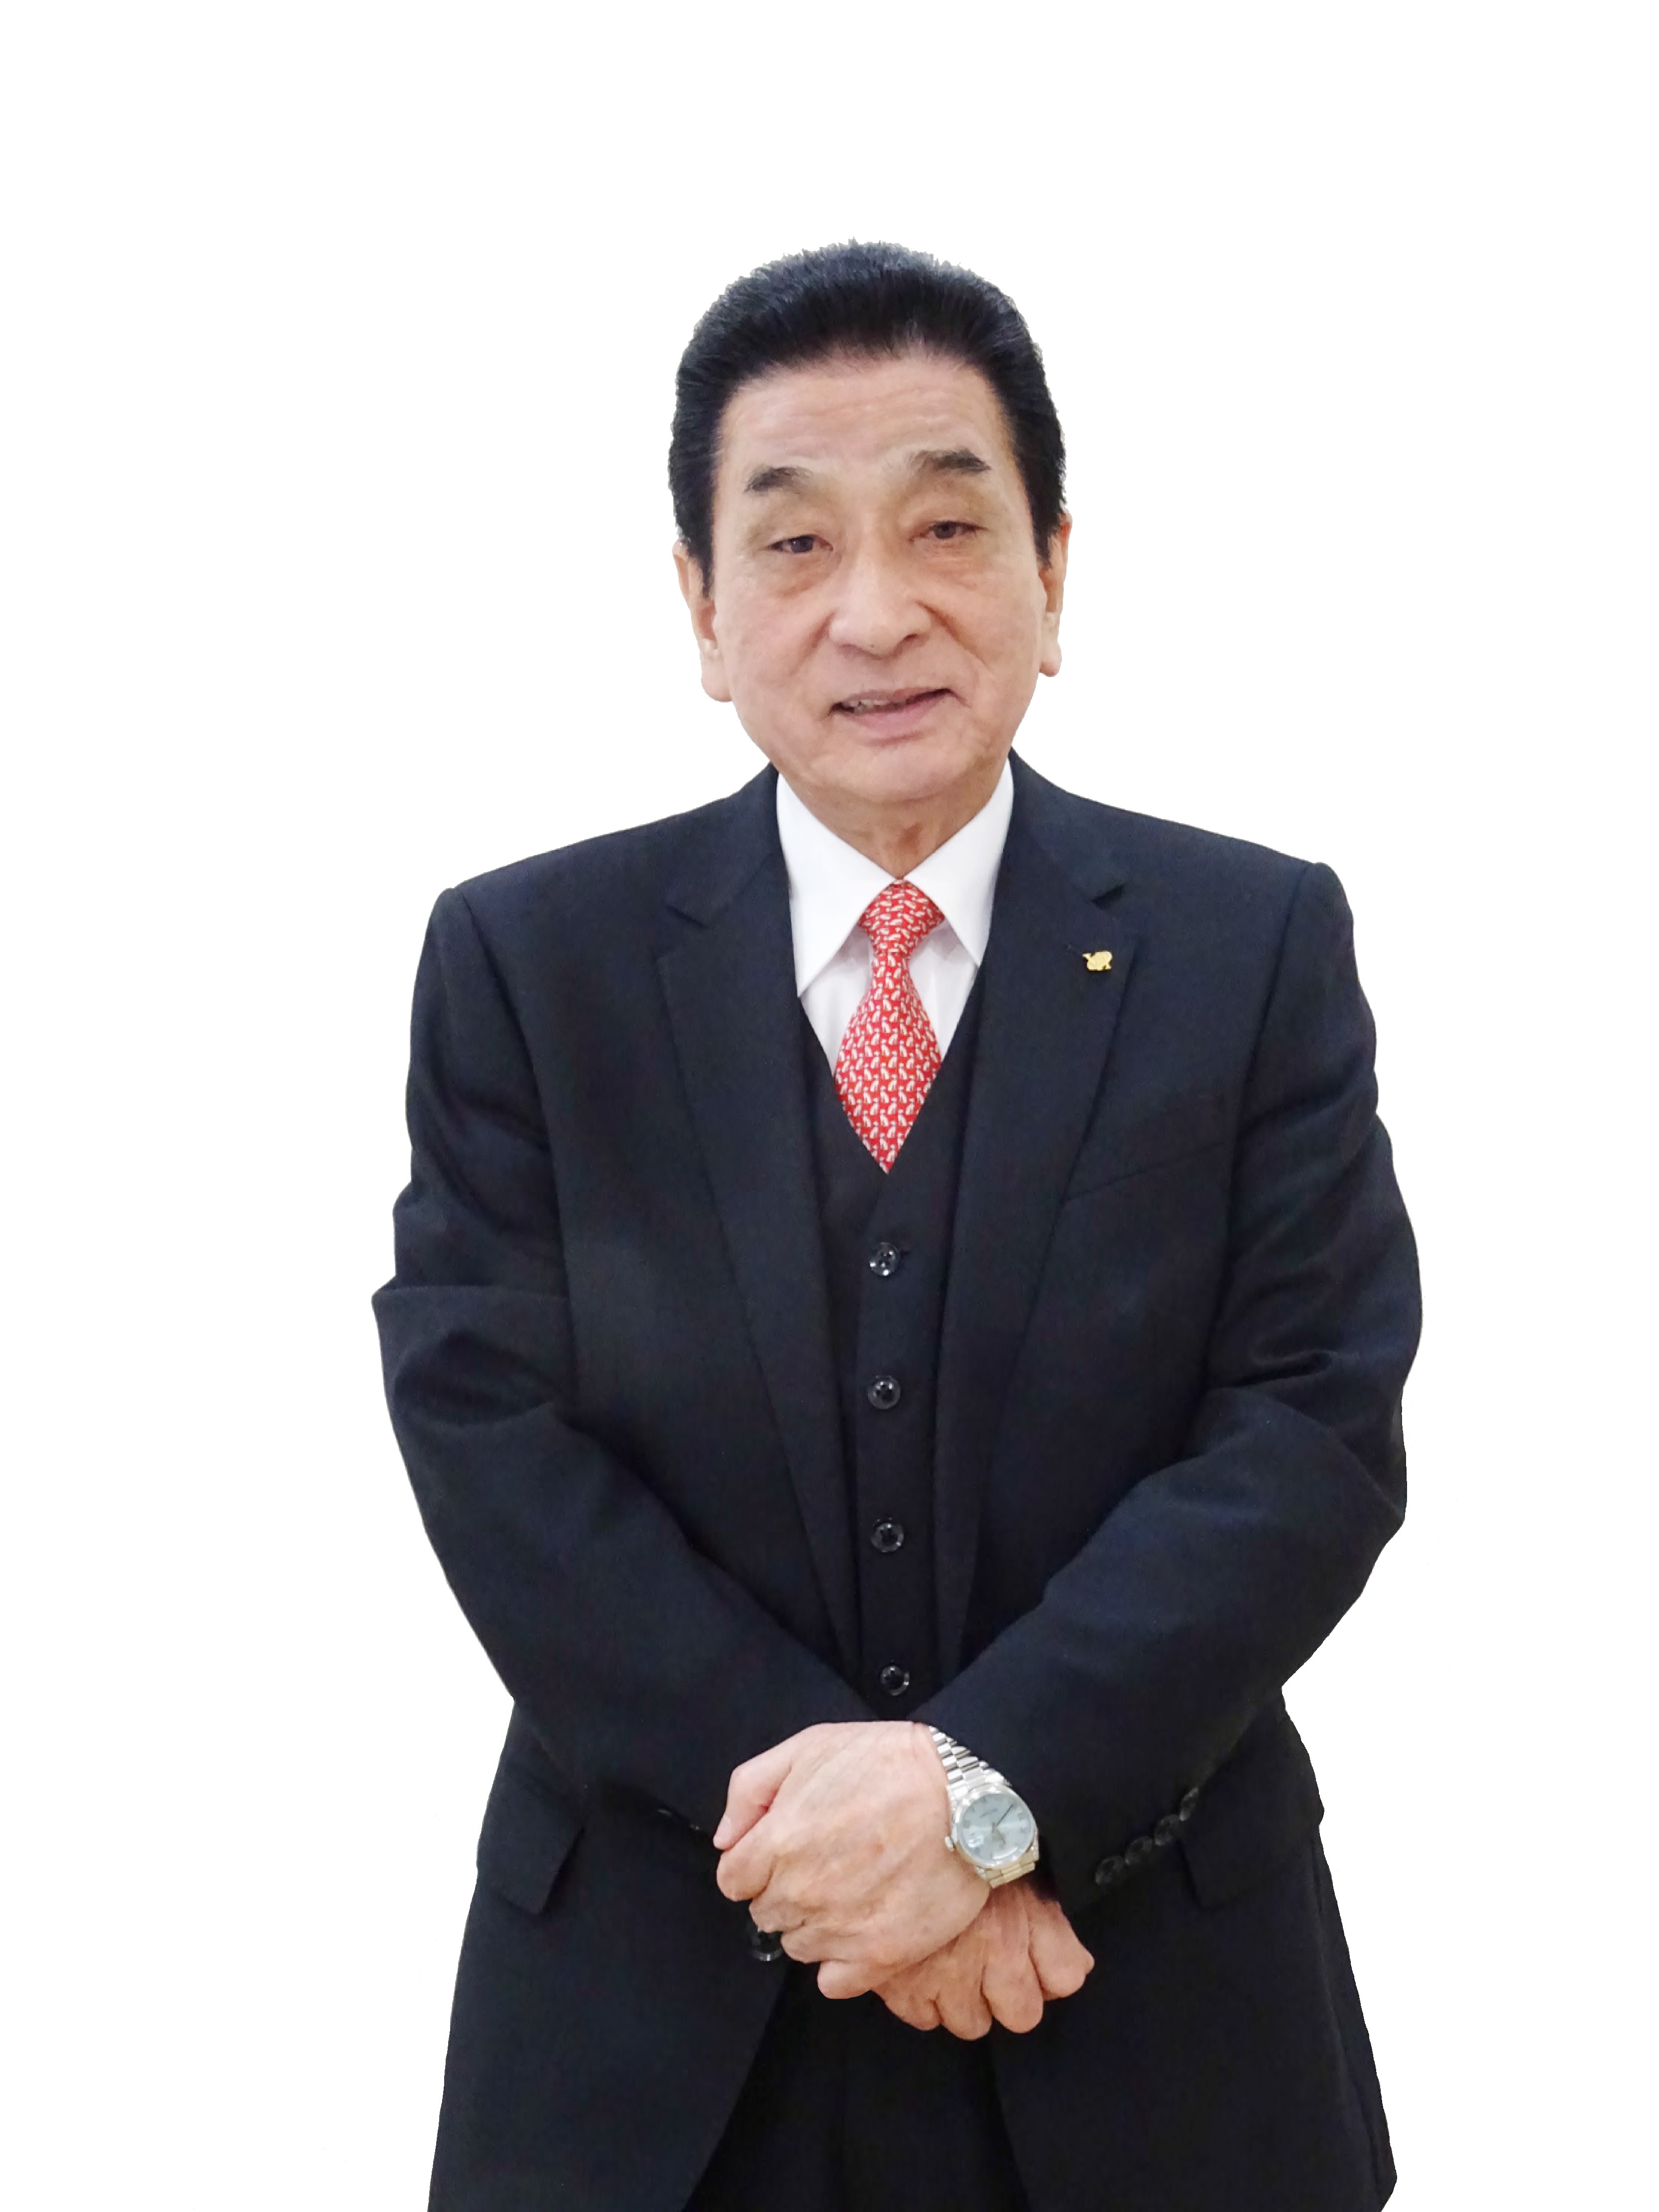 Hisao Ishiyama, president